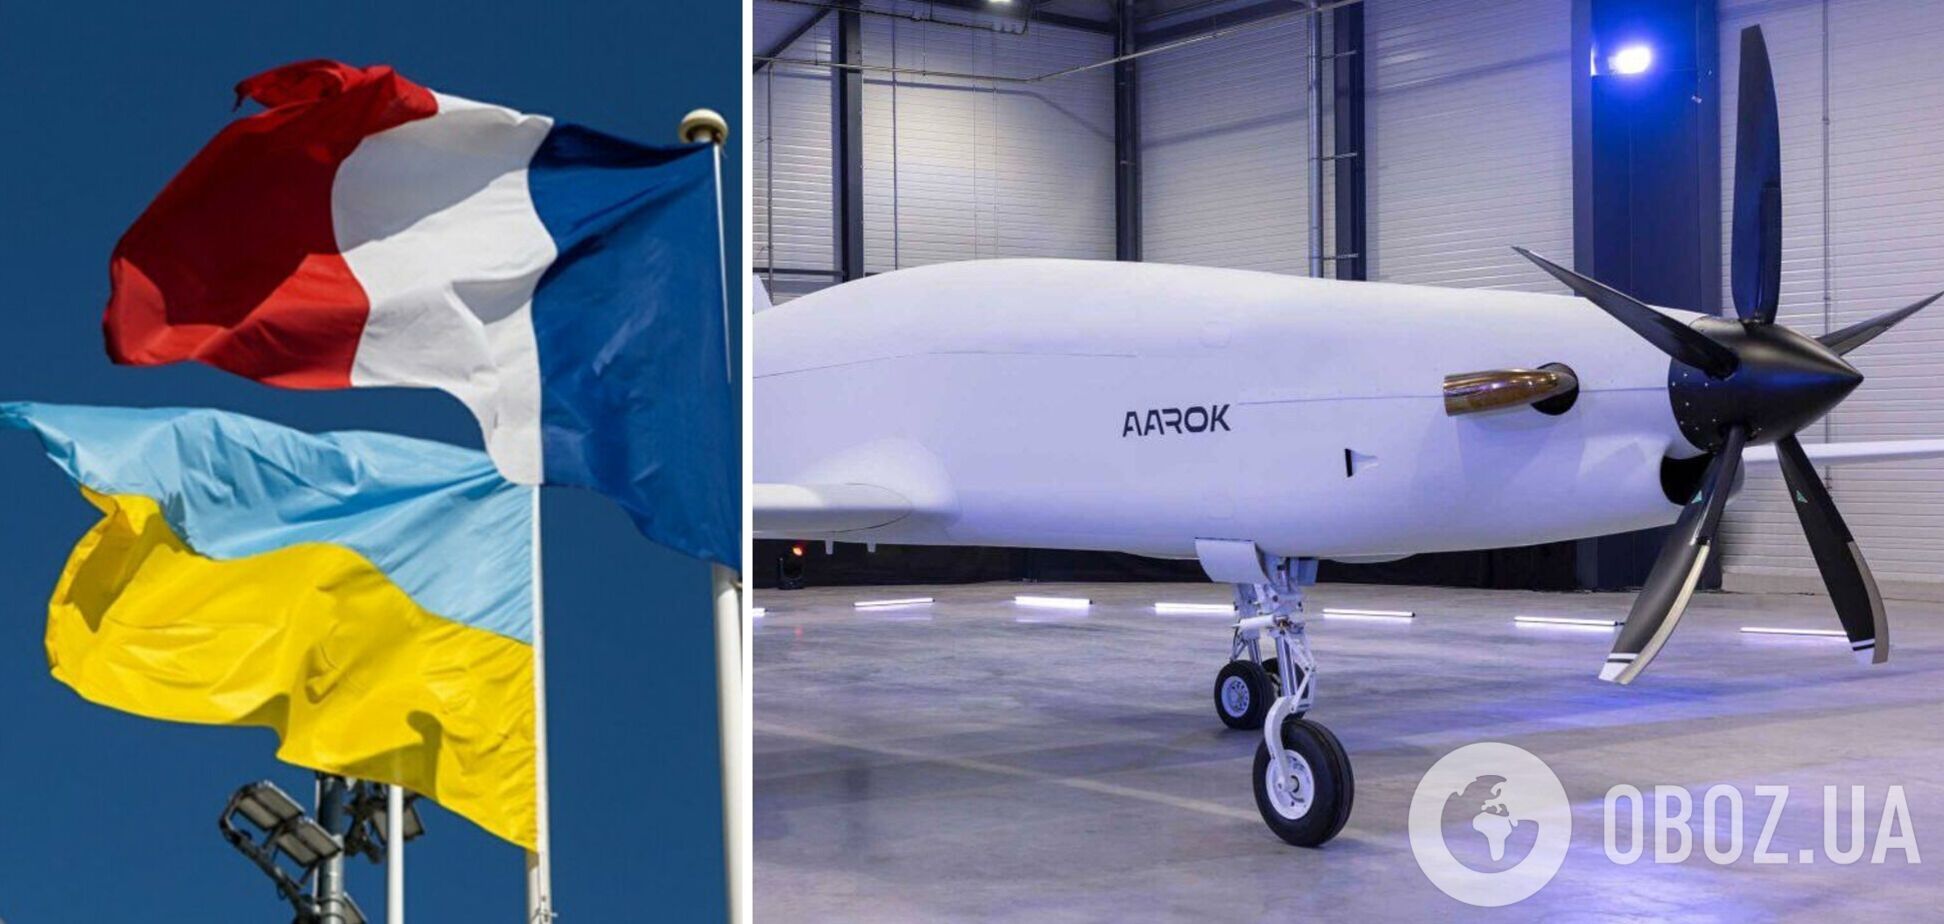 Французская компания совместно с украинским предприятием 'Антонов' будет производить дроны Aarok MALE – La Tribune